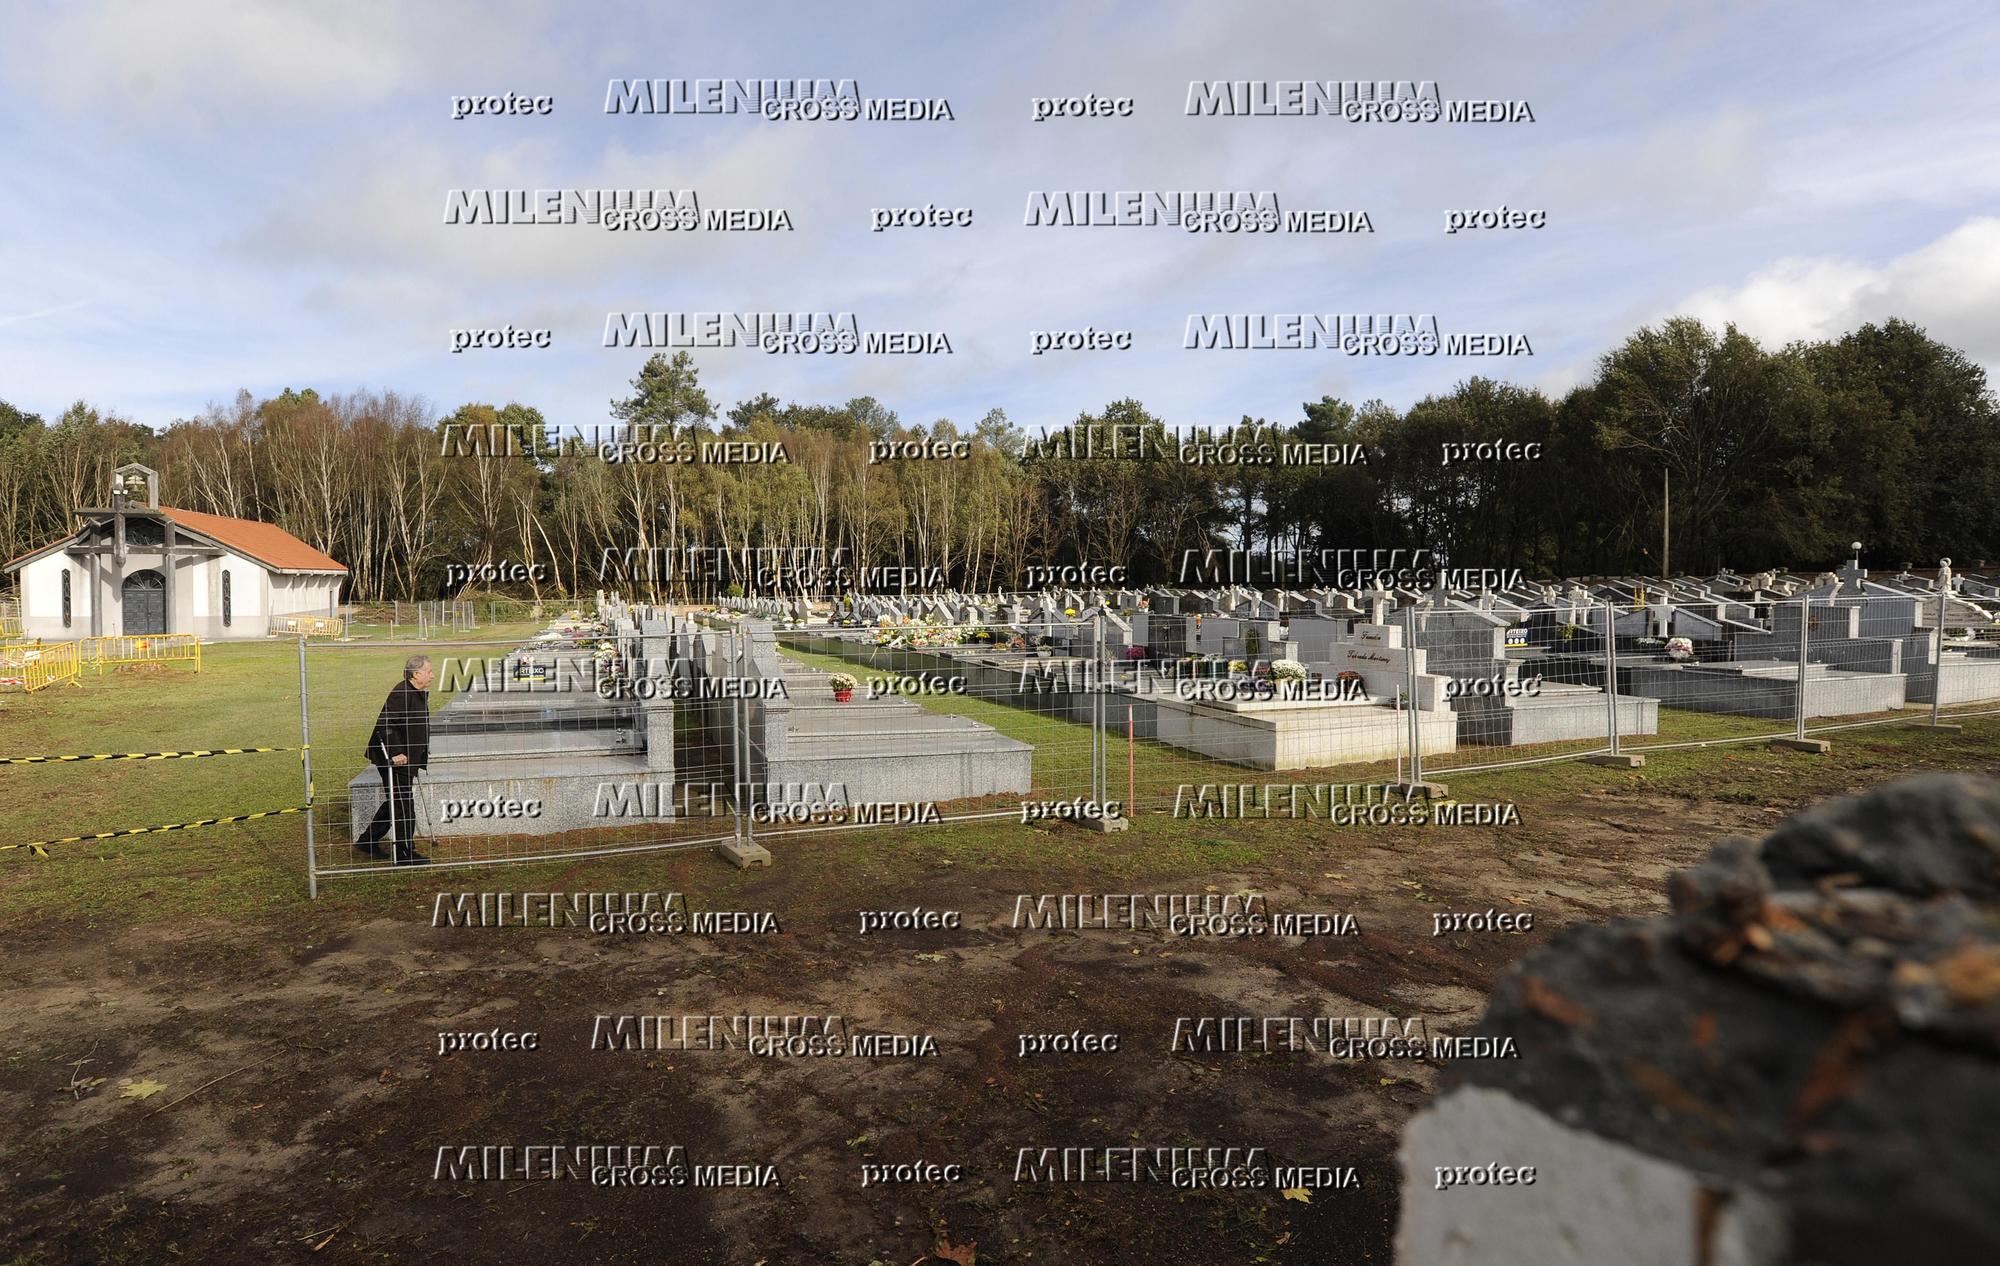 Los cementerios se ponen guapos para su día grande